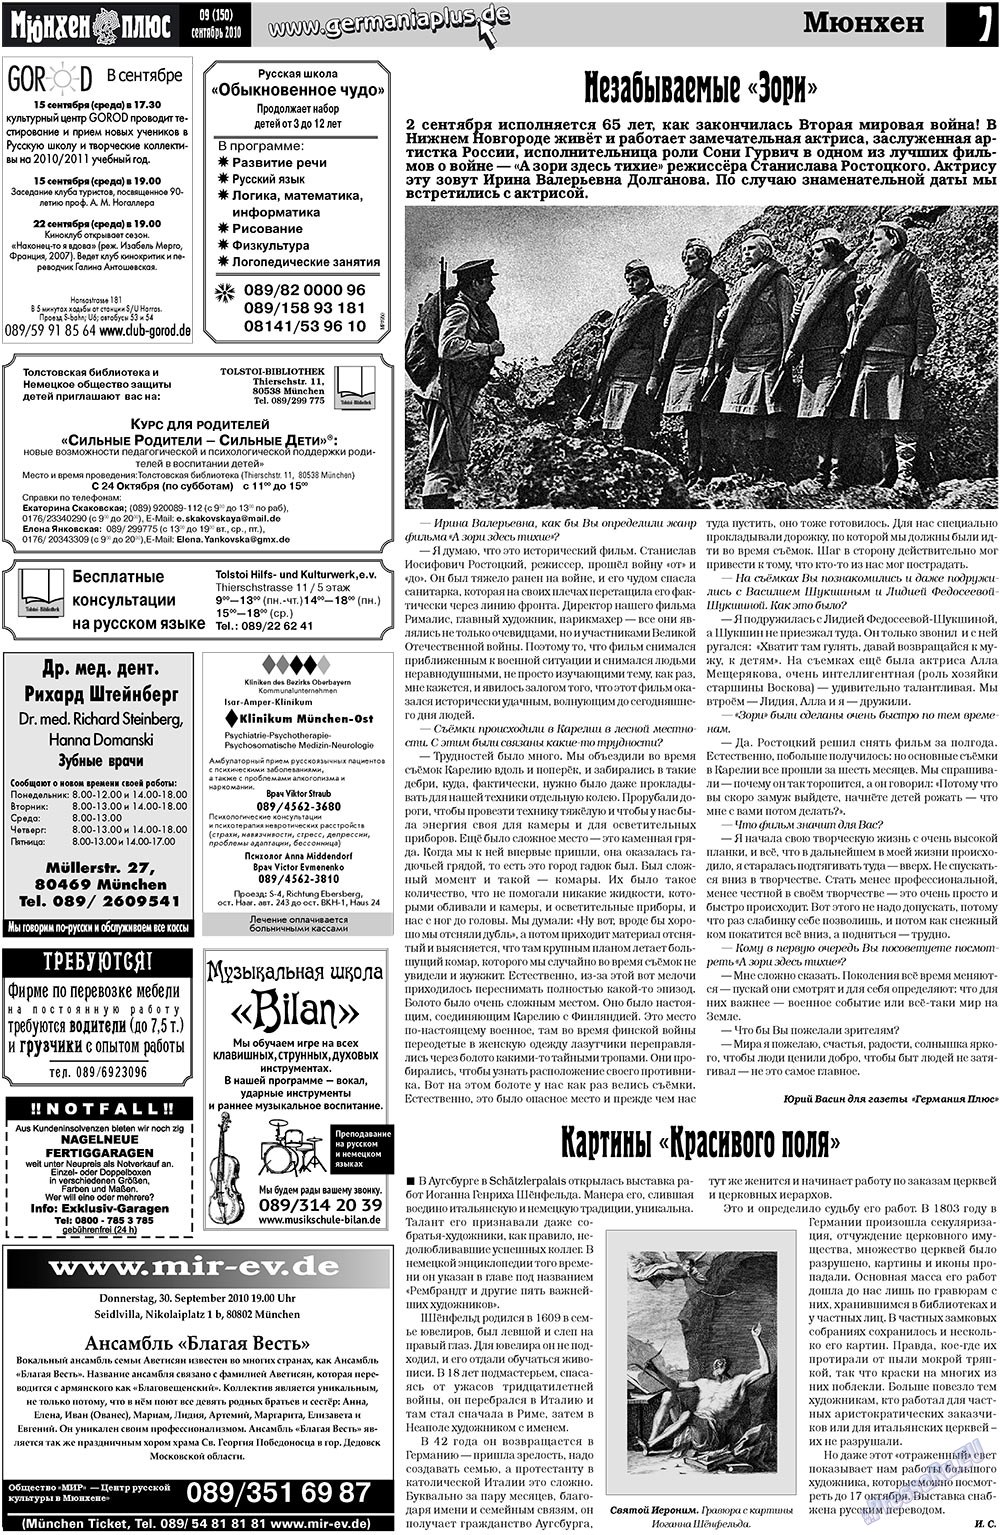 Германия плюс (газета). 2010 год, номер 9, стр. 26